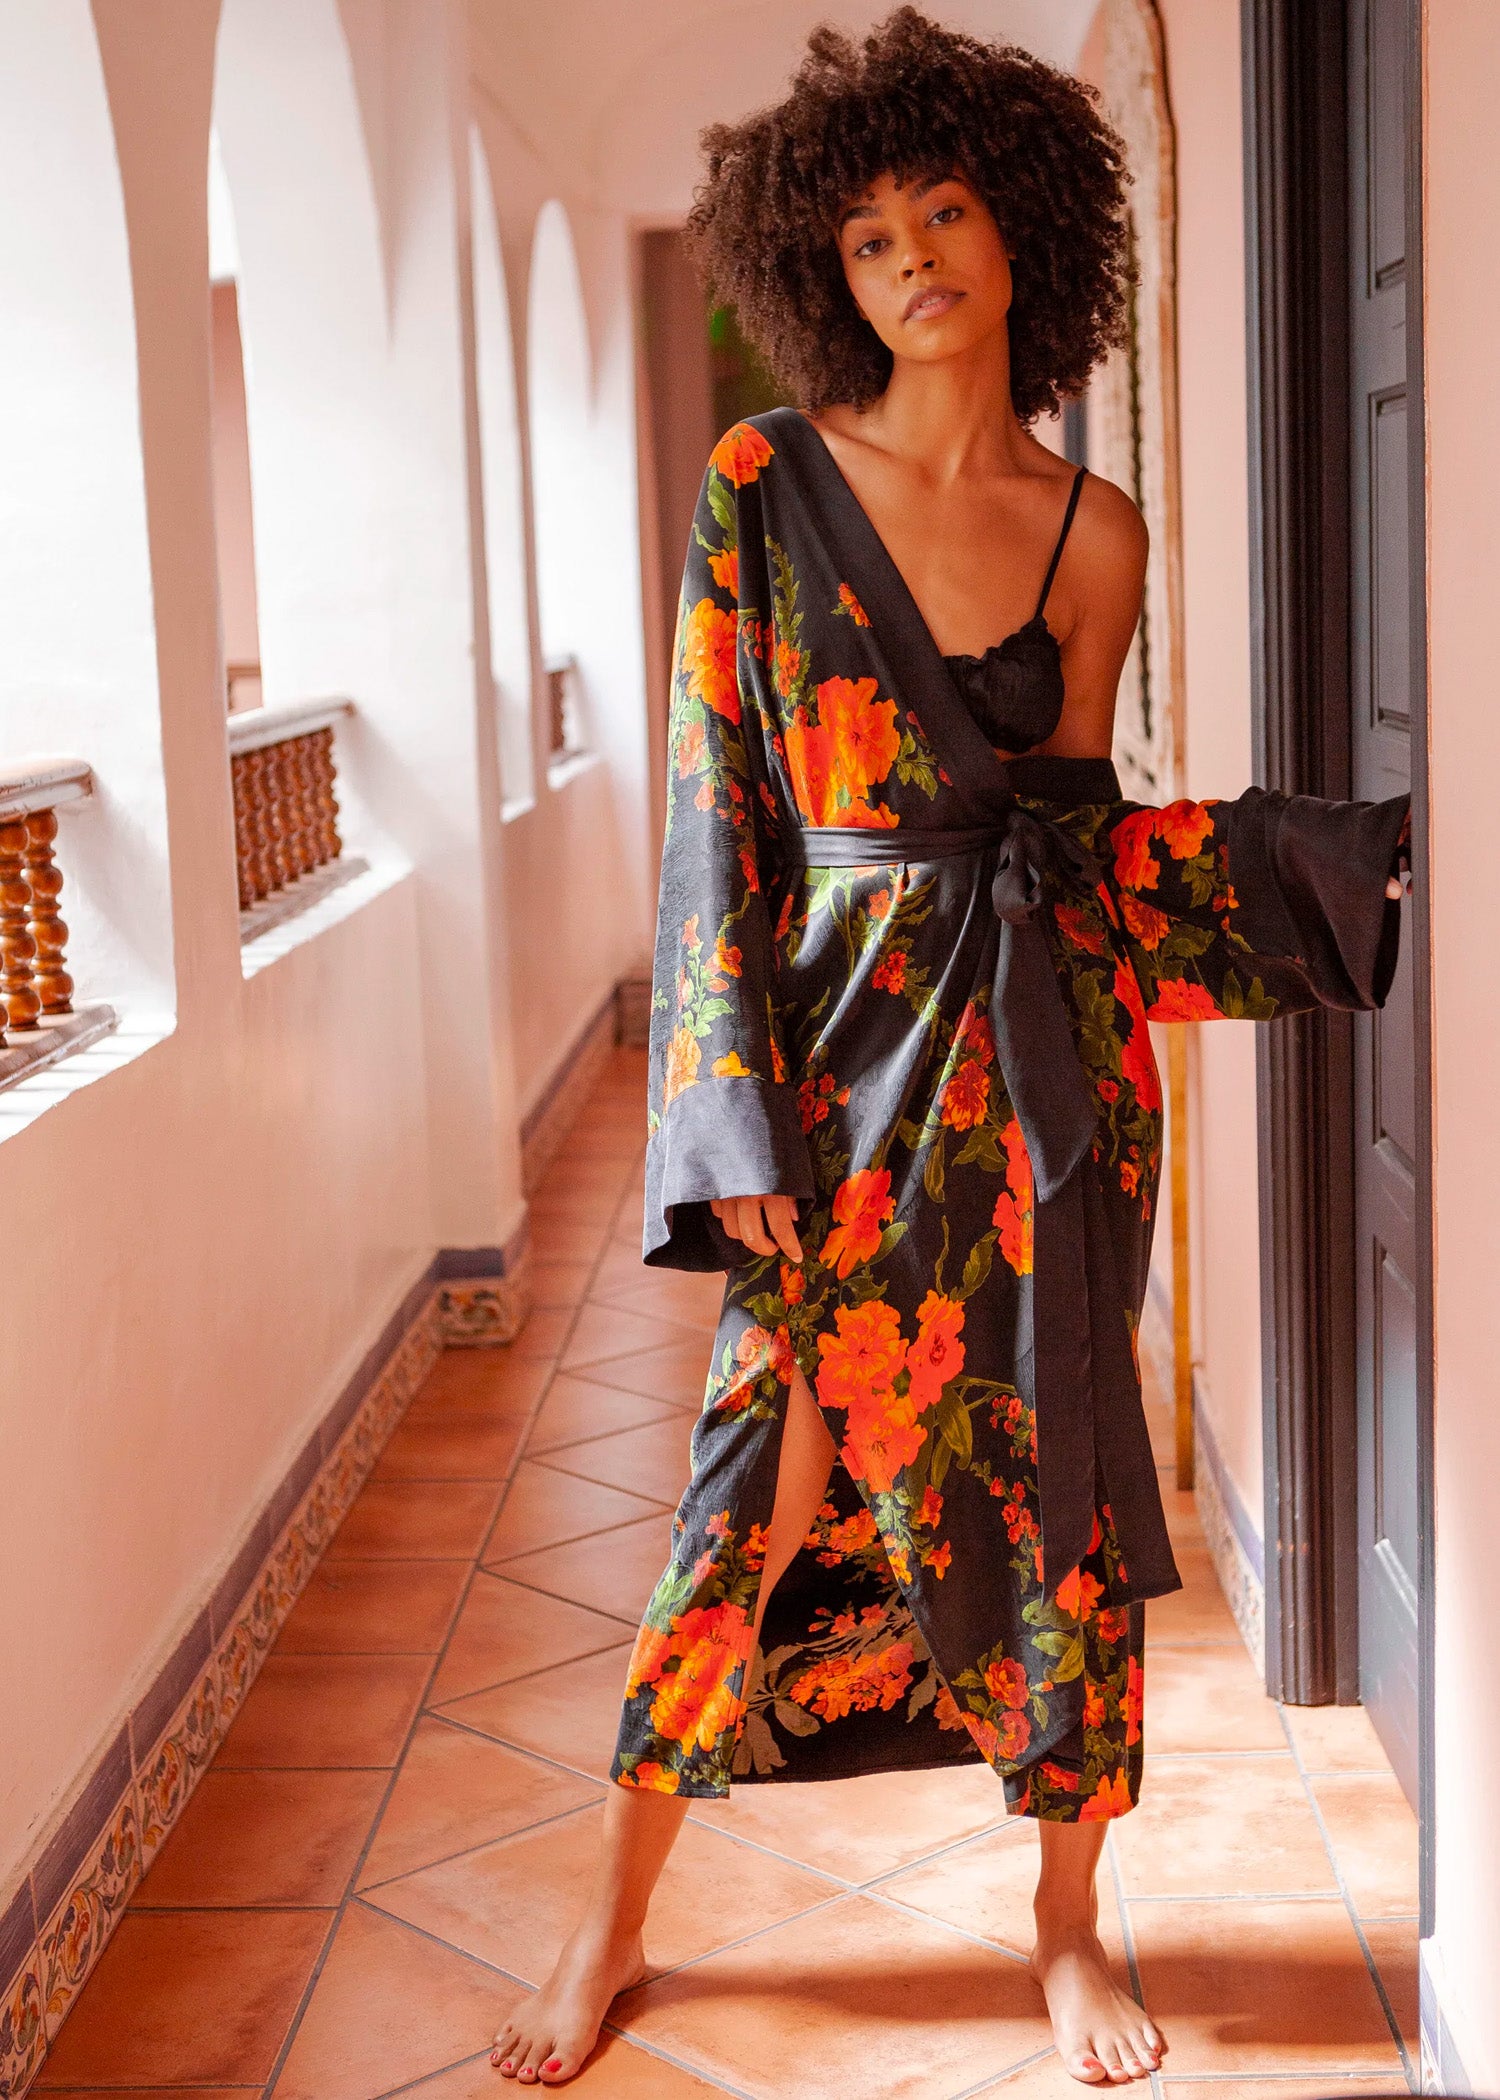 kimono outfit